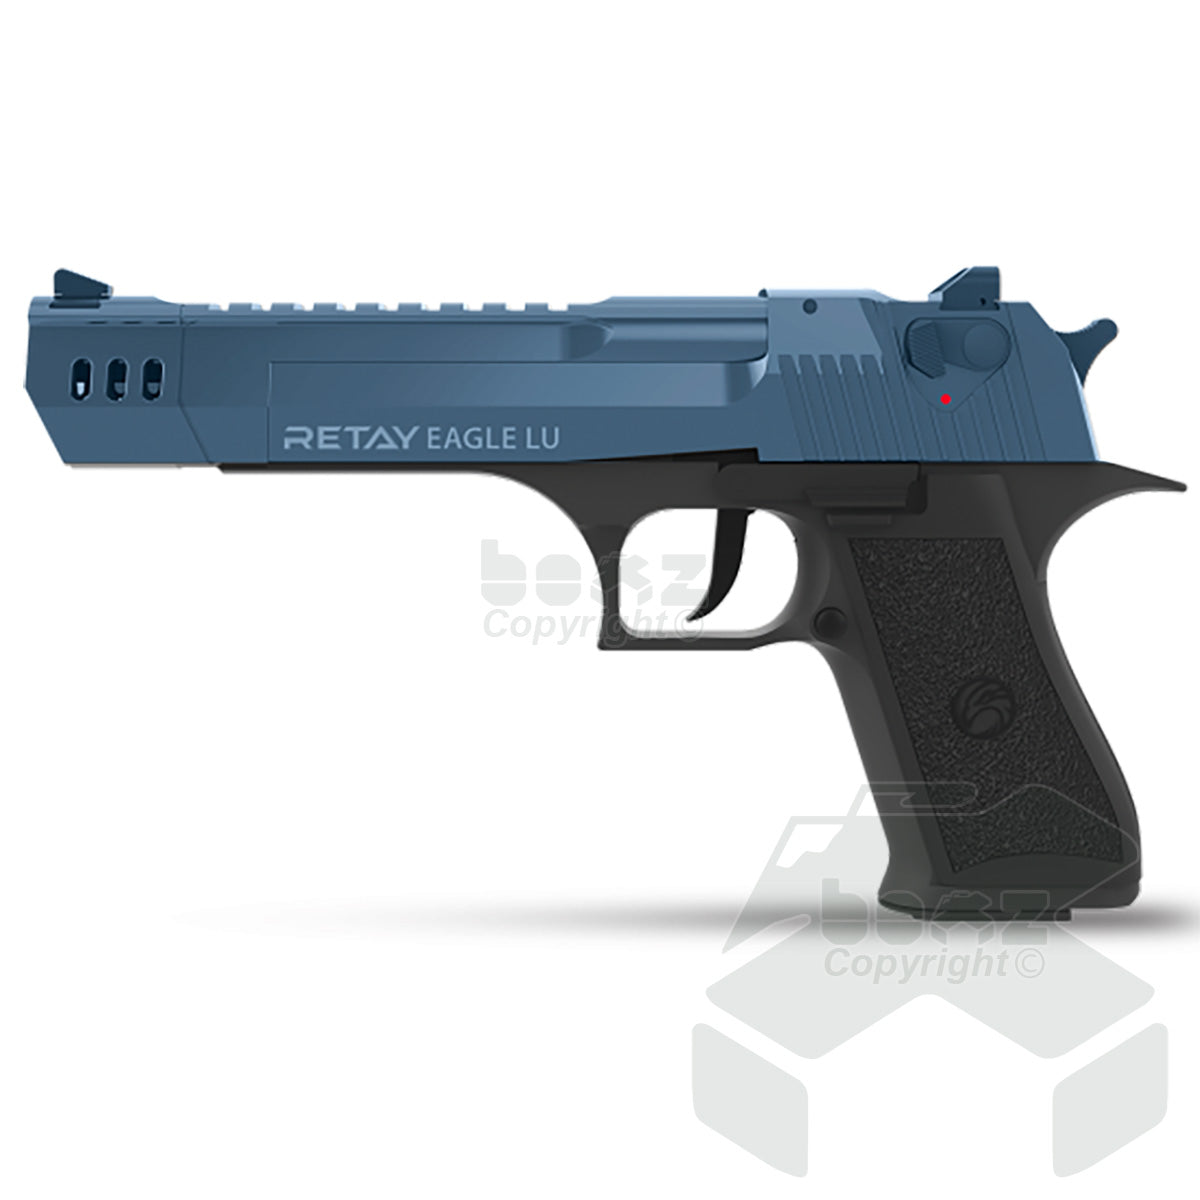 Retay EAGLE LU  Blank Firing Pistol - 9mm  - Black